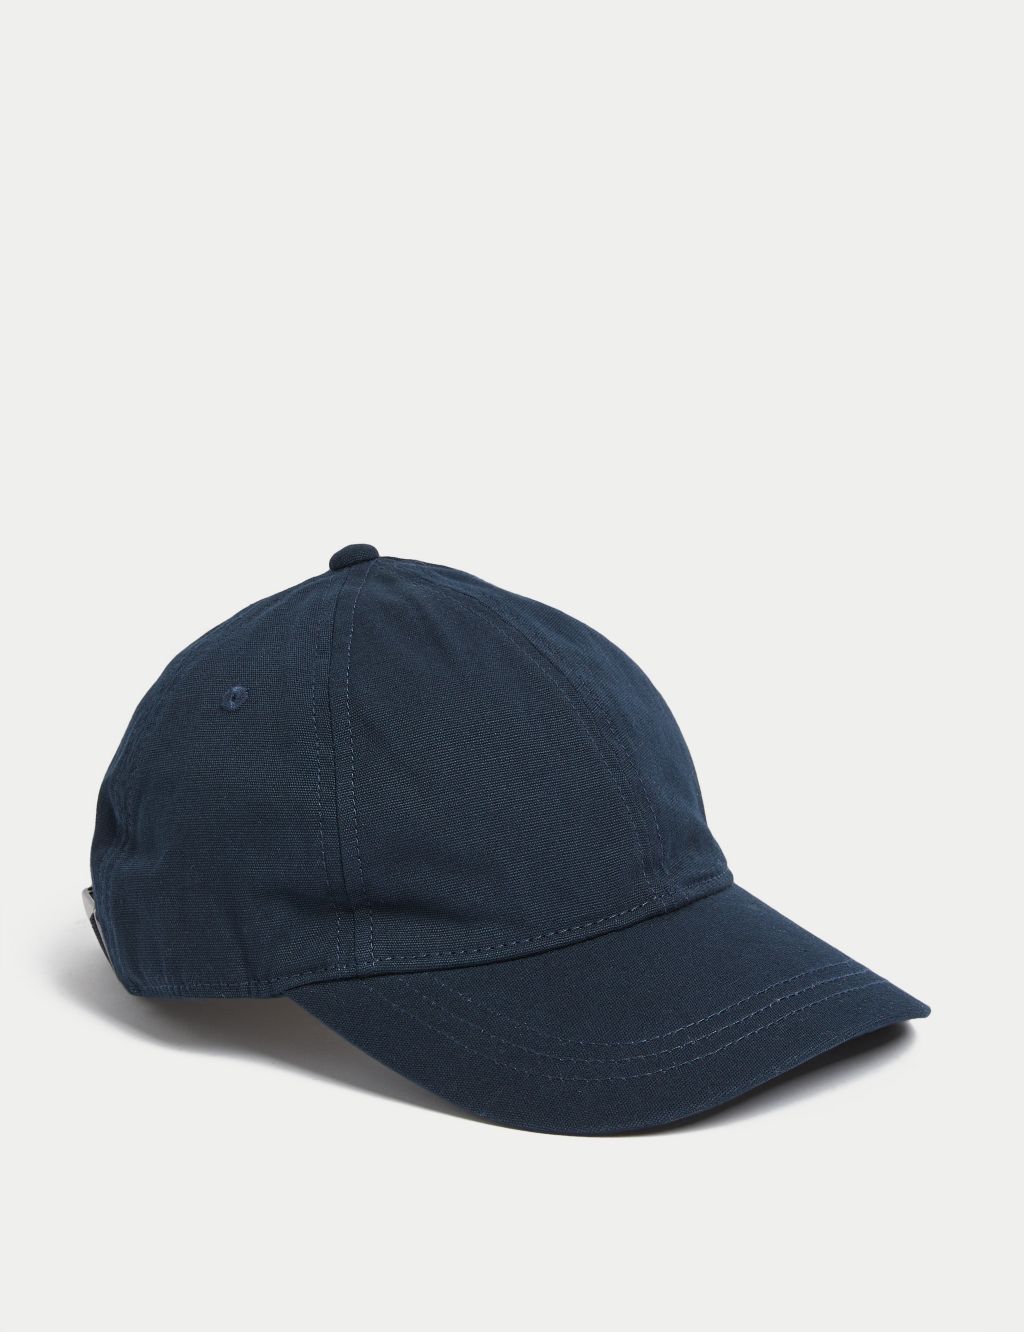 Shop Men’s Cotton Hats at M&S